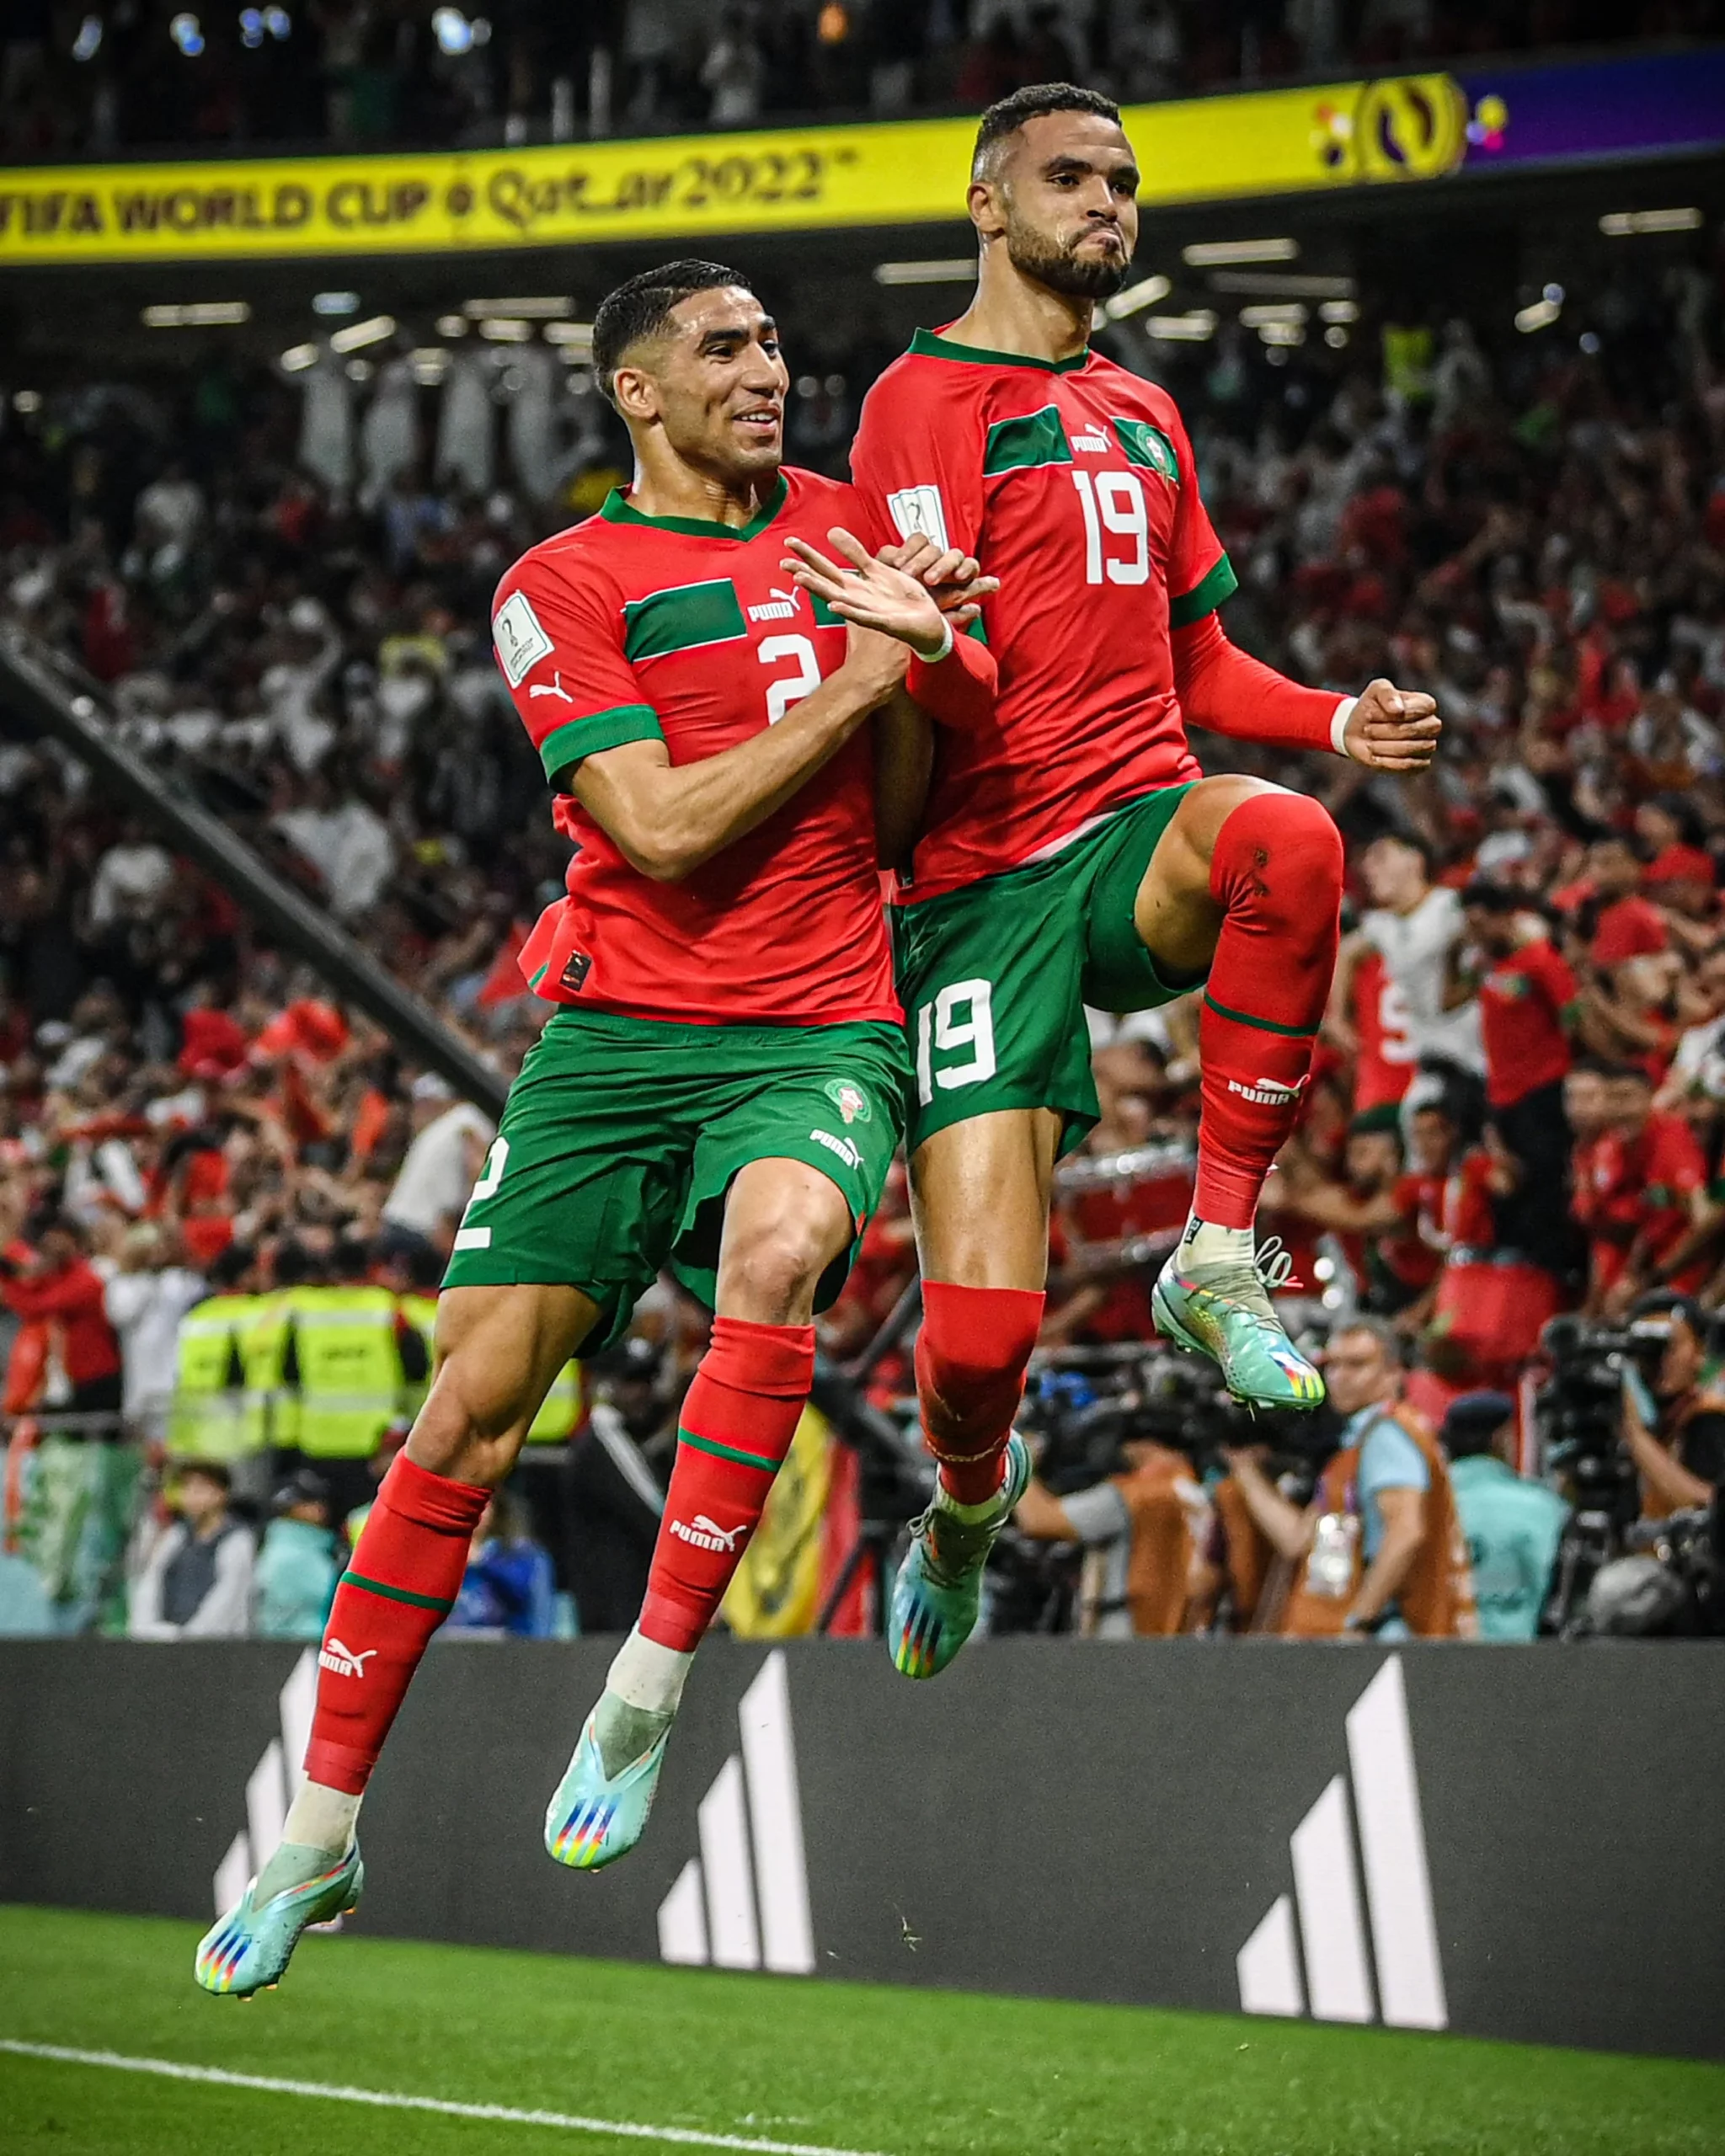 O Marrocos fez história na Copa do Mundo da FIFA ao derrotar Portugal nas quartas de final com um gol de Youssef En-Nesyri